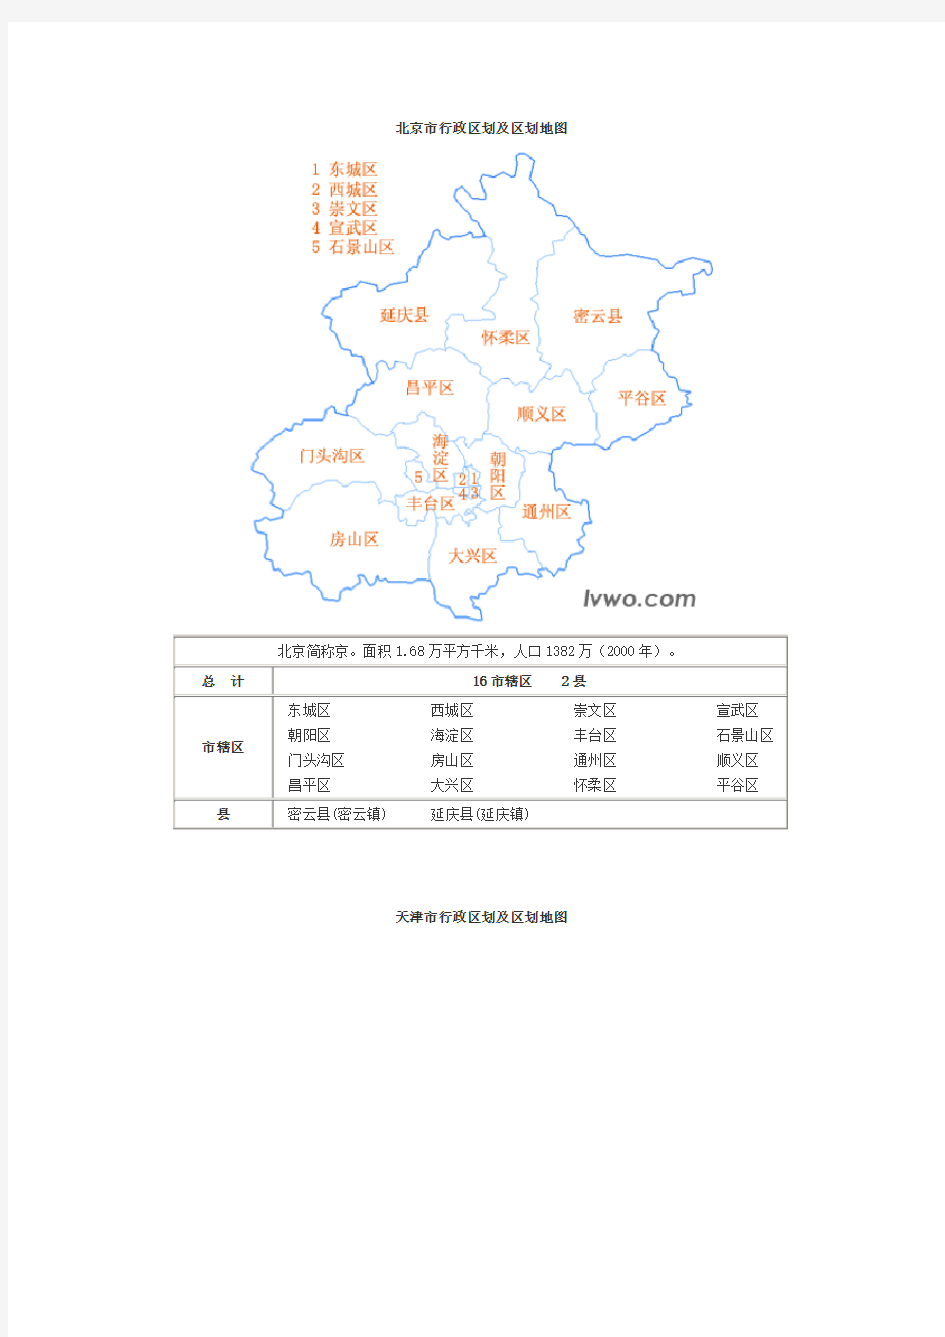 中国分省行政区划及区划地图(图形版)